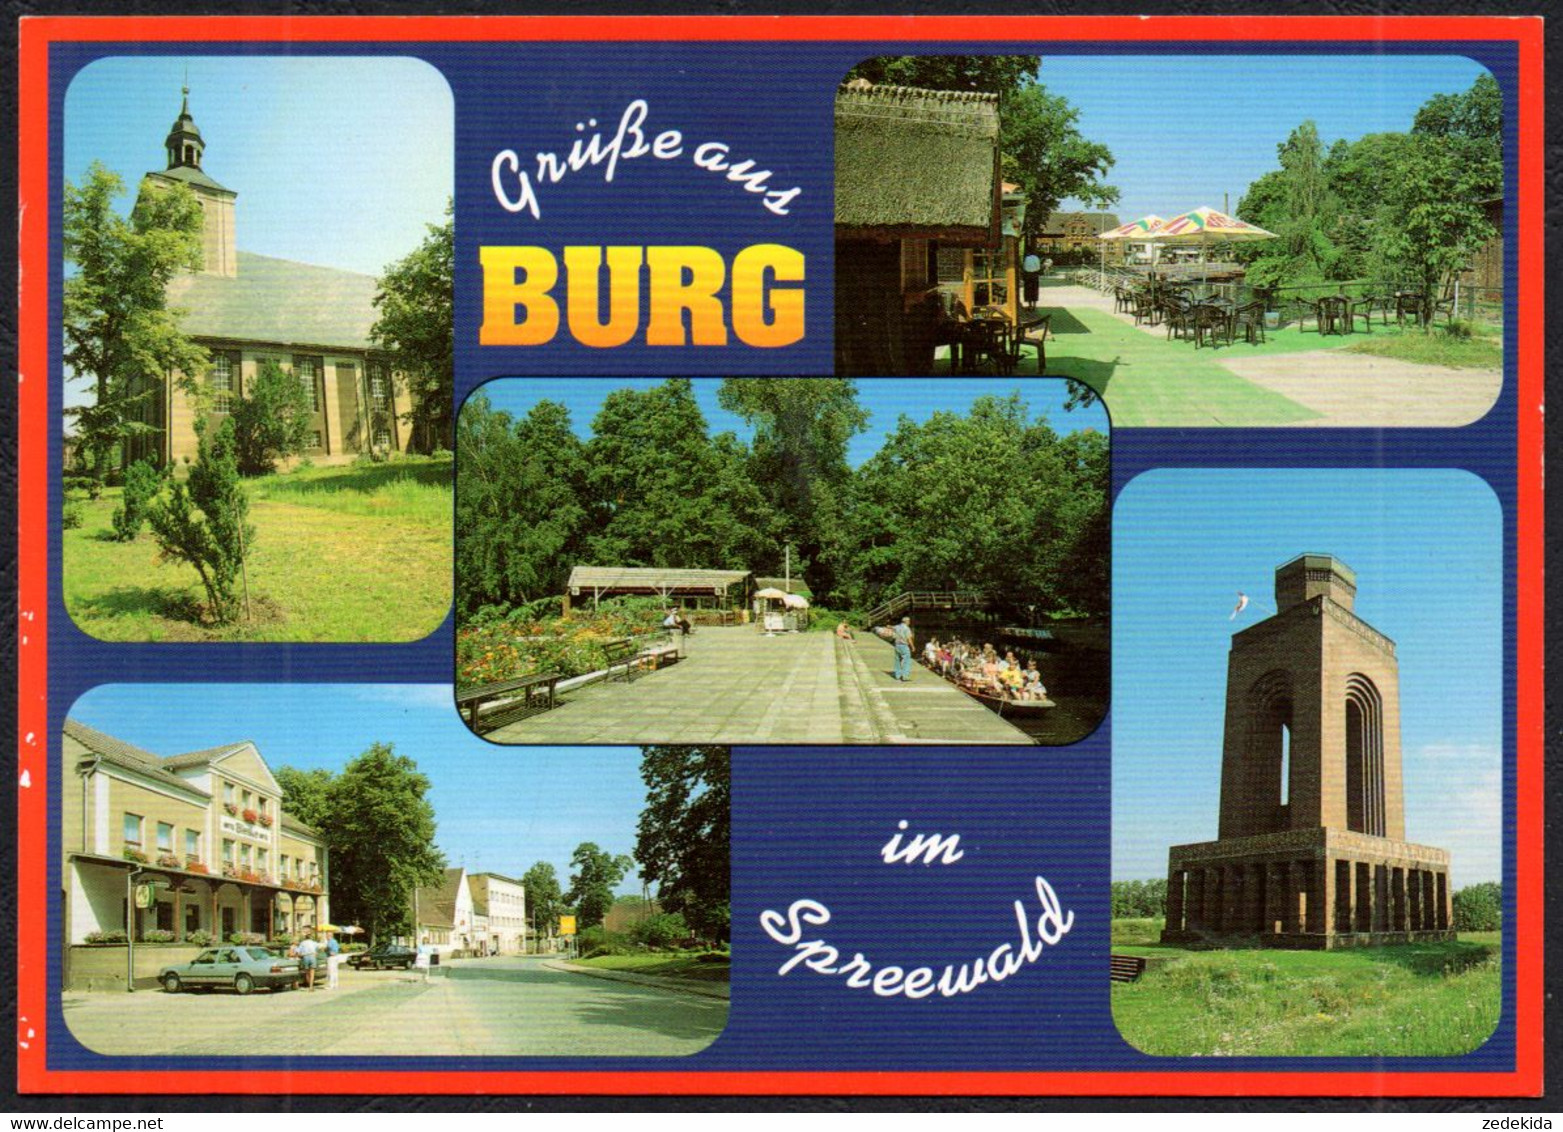 E9733 - Burg - Verlag Bild Und Heimat Reichenbach Qualitätskarte - Burg (Spreewald)